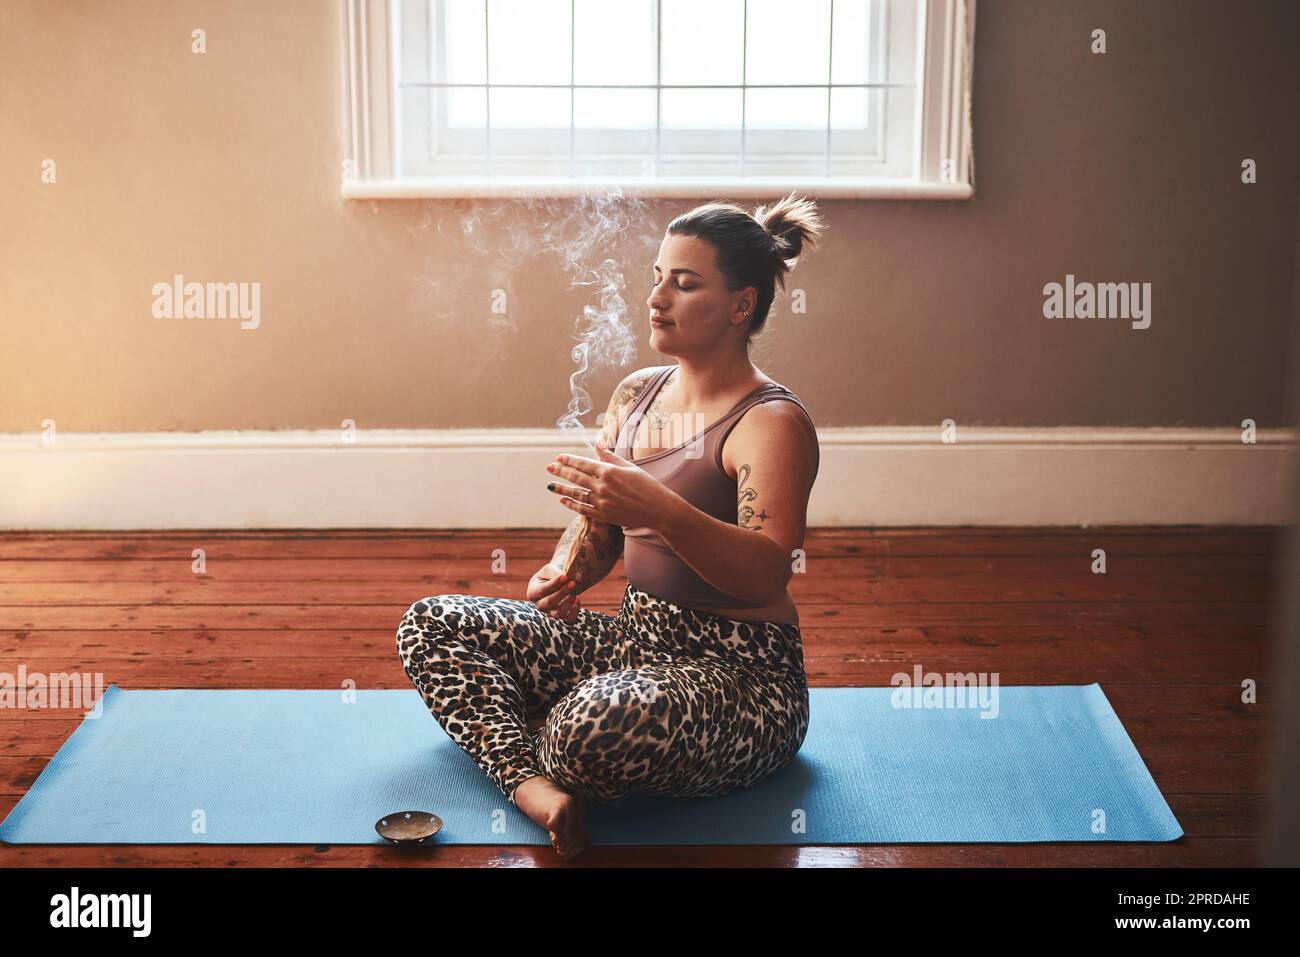 Il fumo dei bastoni di palo santo è così potente che pulisce. Una giovane donna che brucia un bastone di palo santo mentre si siede su un tappeto di yoga a casa. Foto Stock